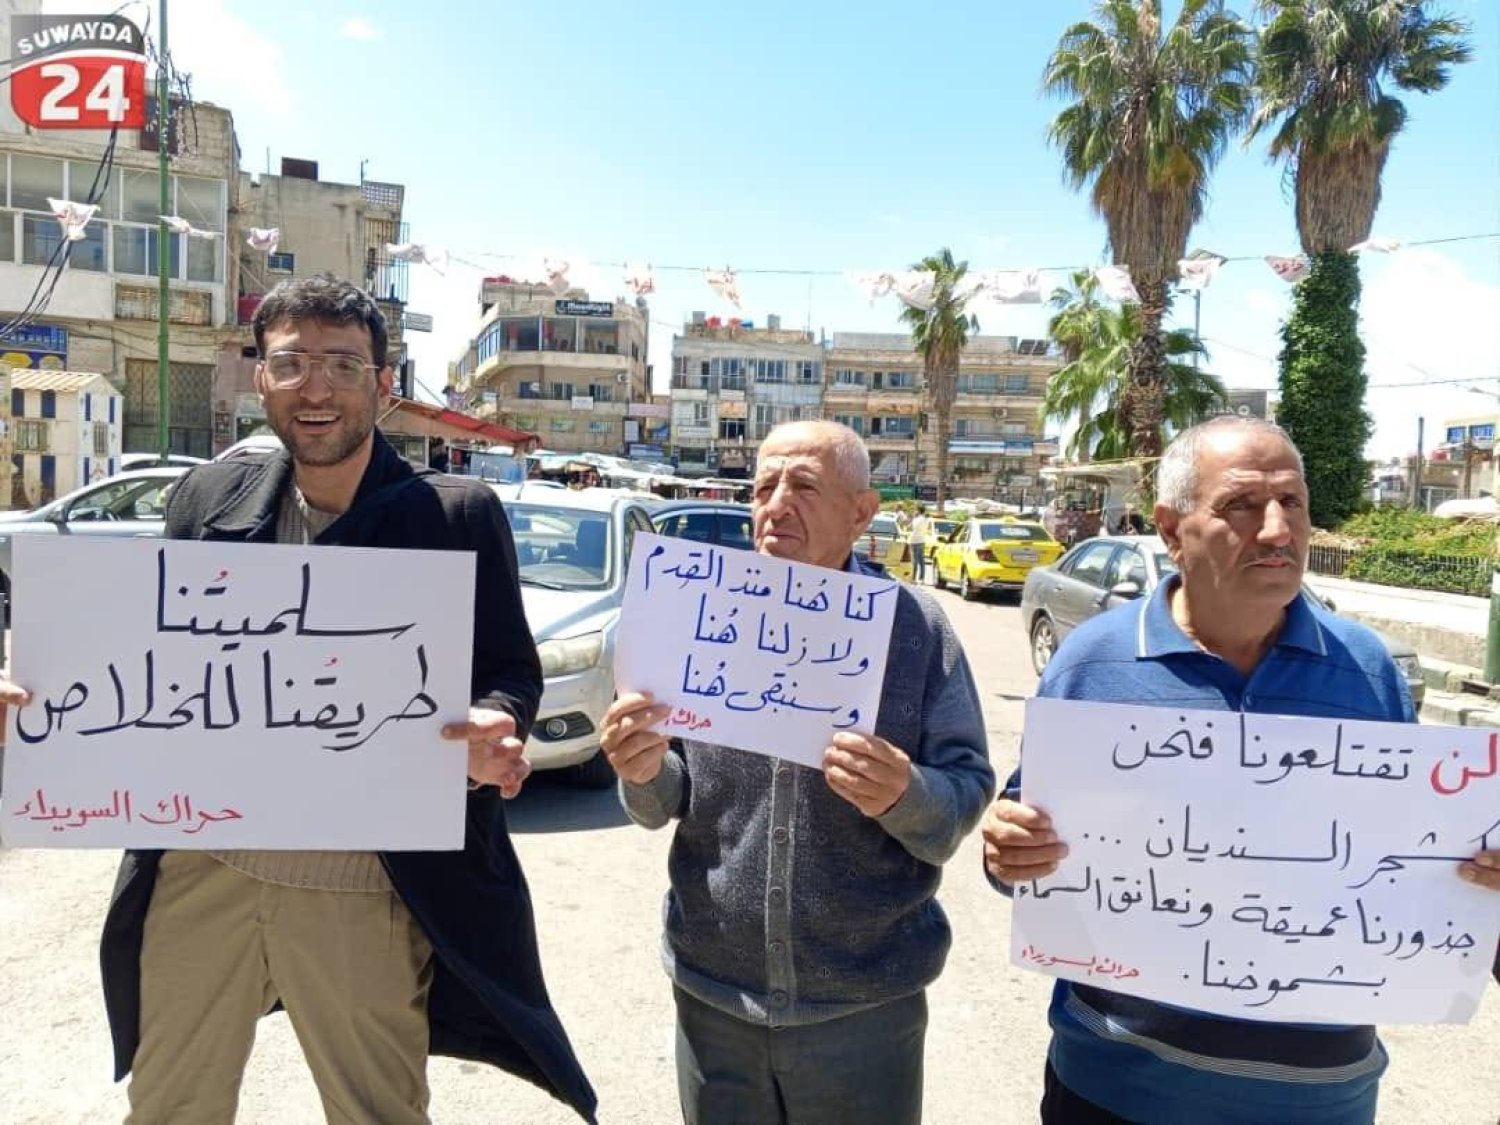 متظاهرون مناهضون للنظام السوري في محافظة السويداء (موقع السويداء 24)